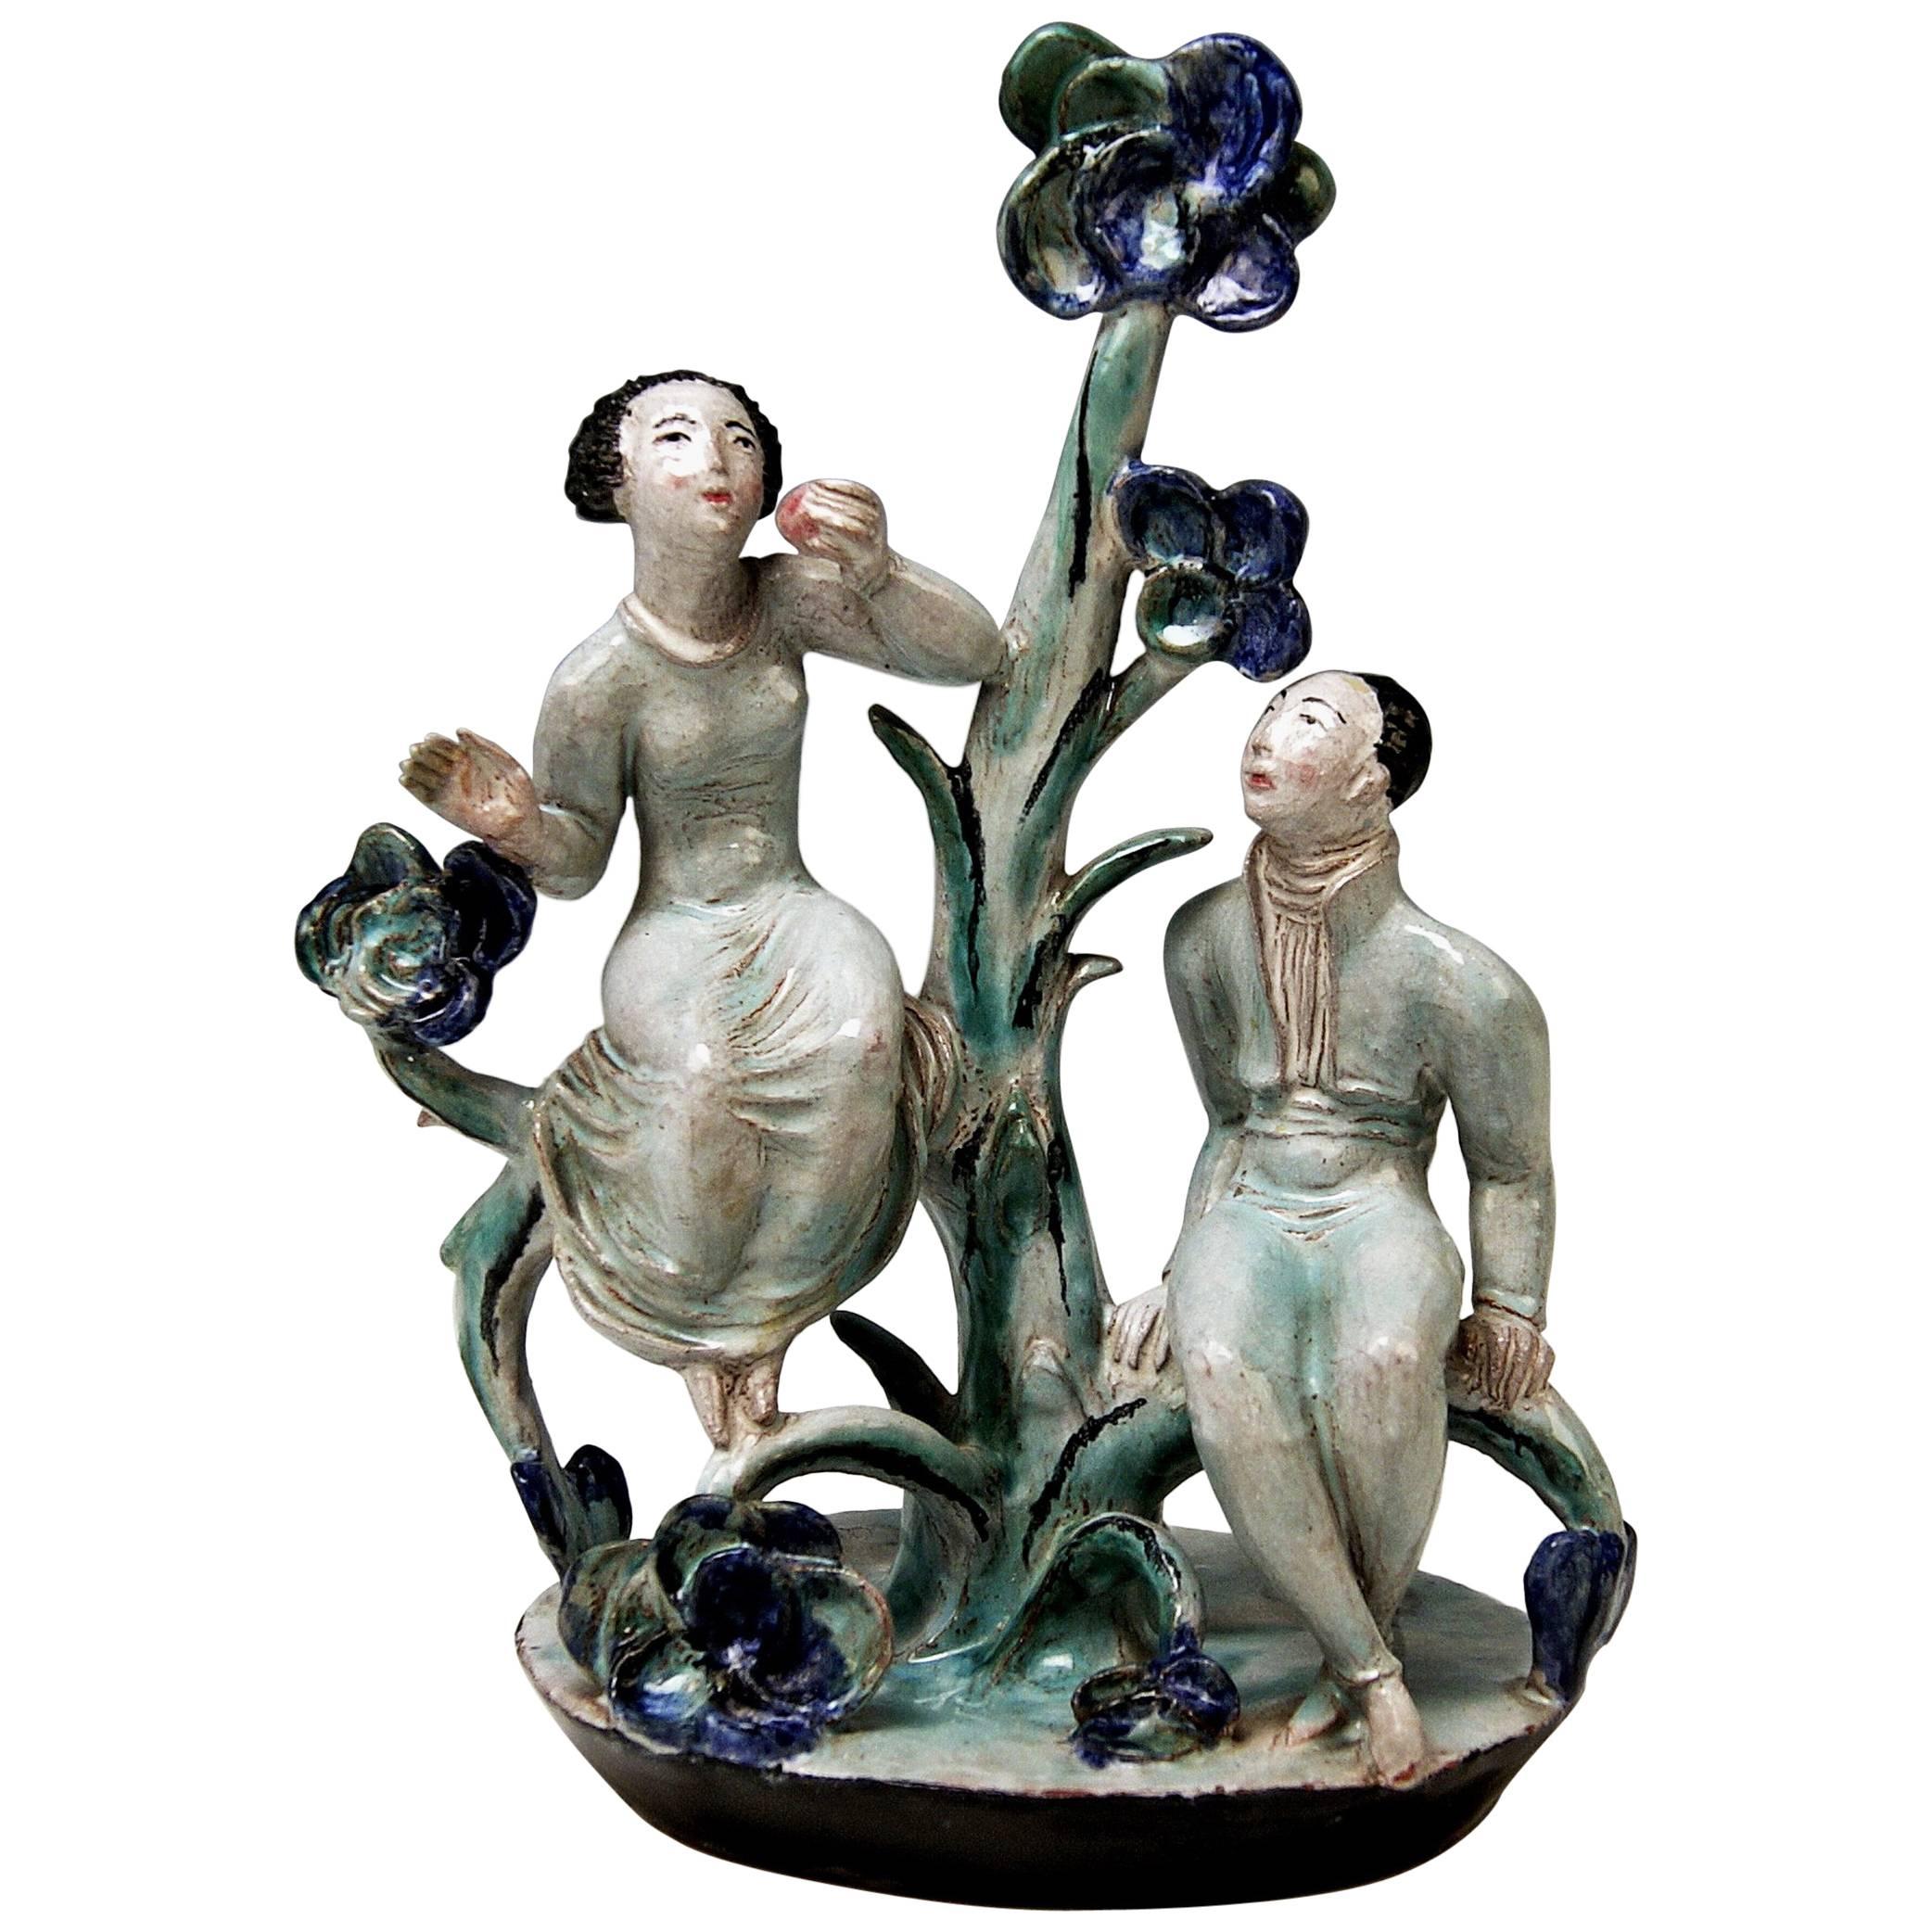 Adam and Eve Ceramics Wiener Werkstätte Vienna Austria by Lotte Calm, circa 1925